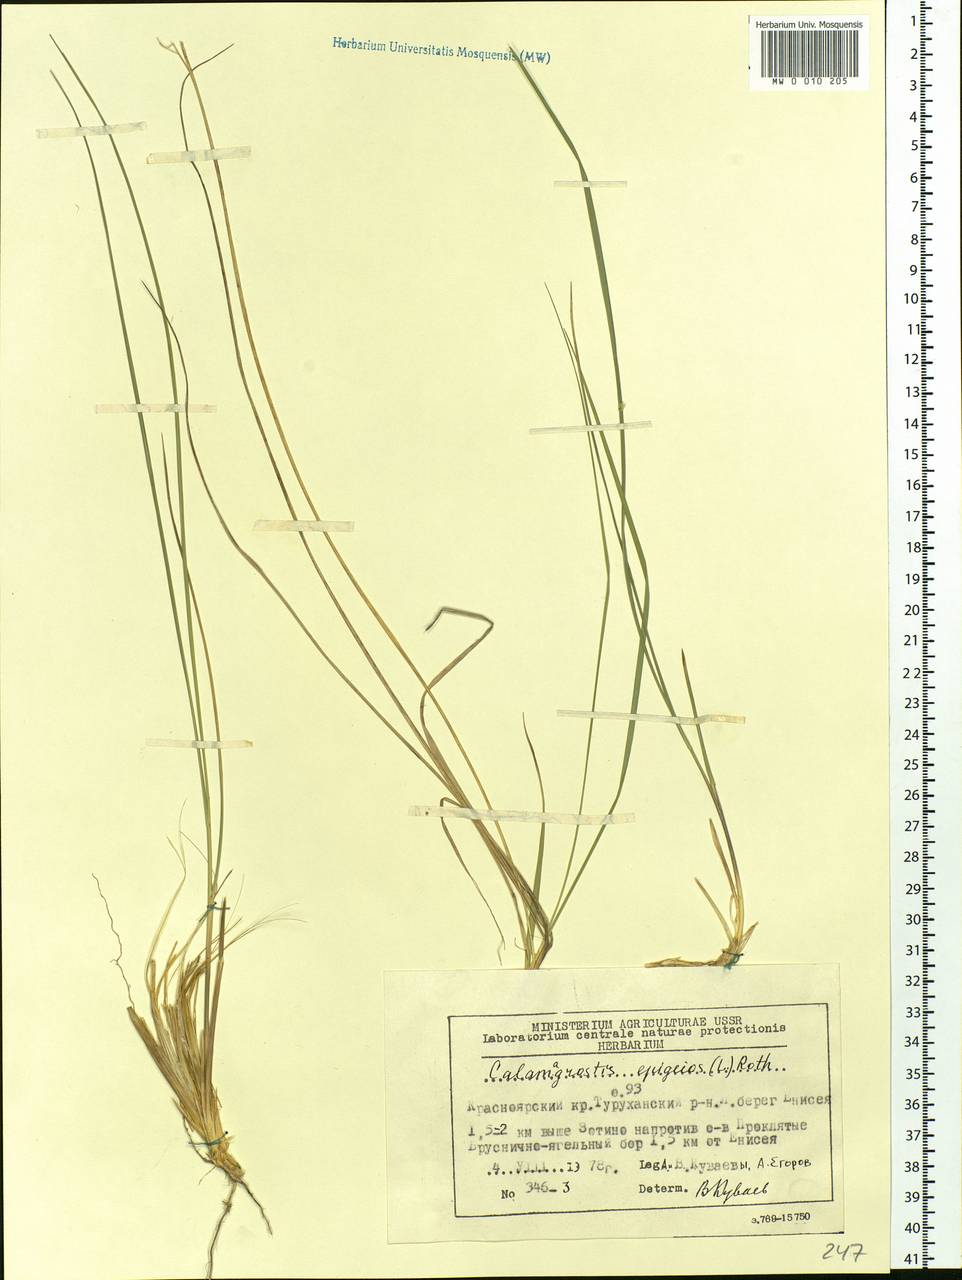 Calamagrostis epigejos (L.) Roth, Siberia, Central Siberia (S3) (Russia)